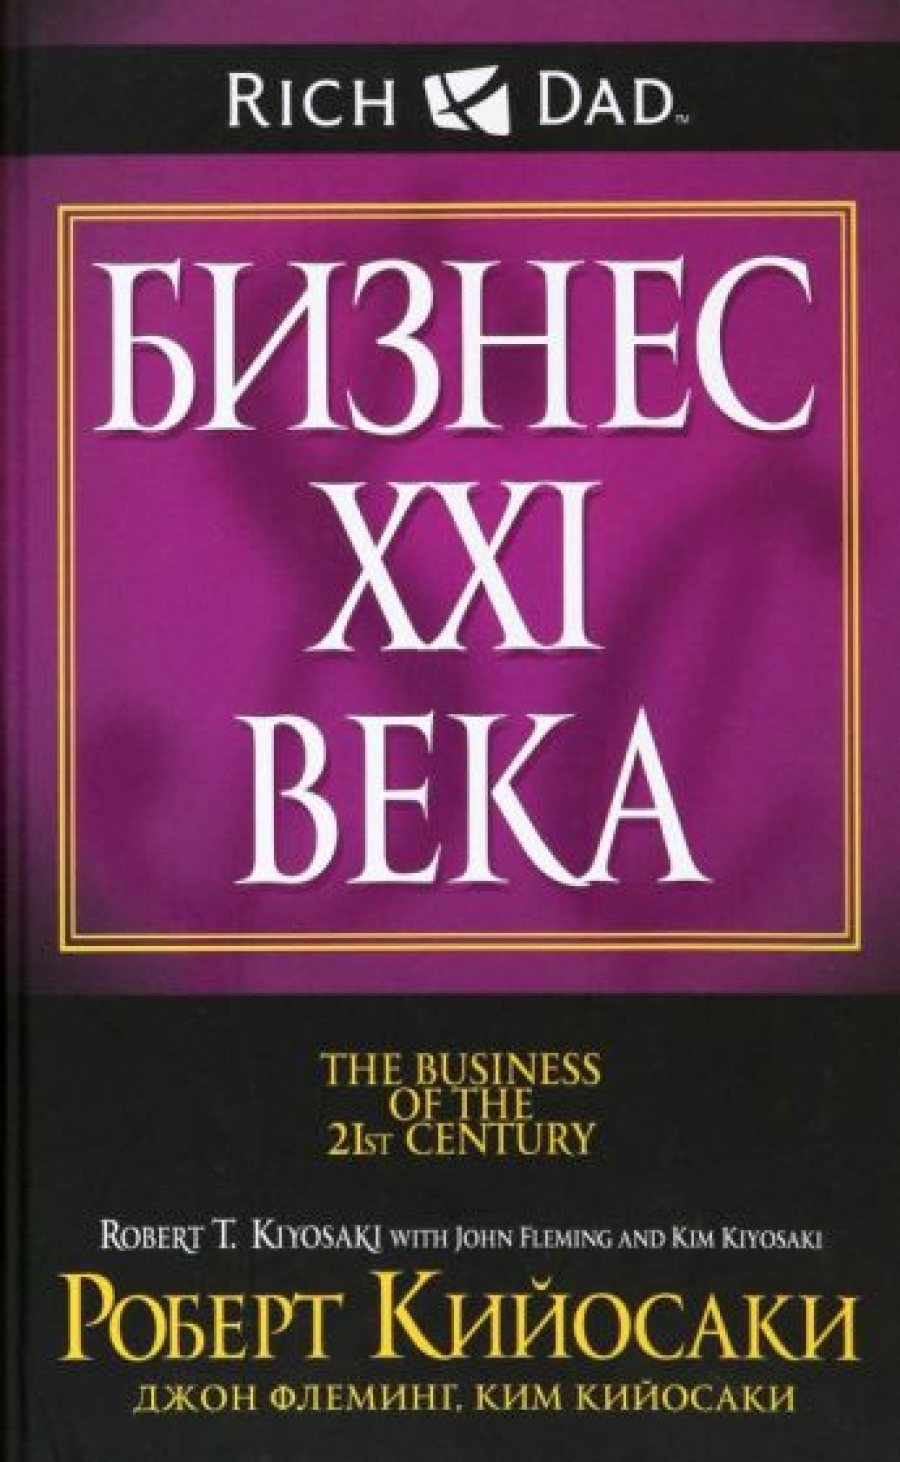 Кийосаки Р.Т., Кийосаки К., Флеминг Дж. - Бизнес ХХI века 